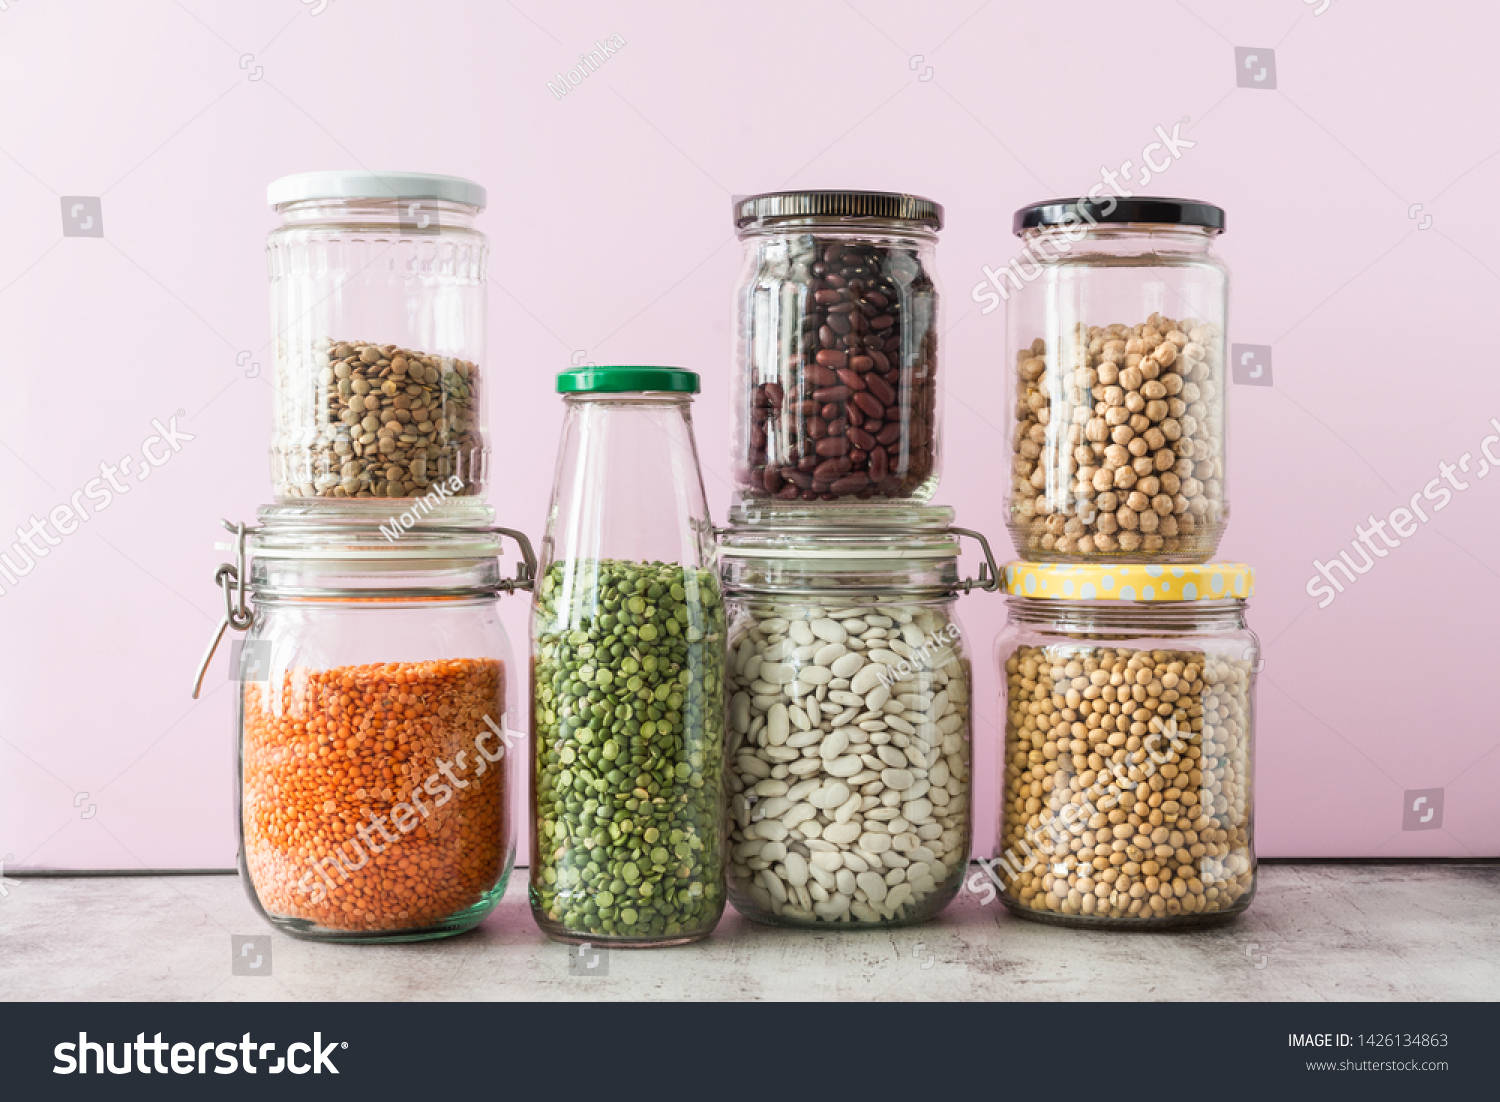 Variety of legumes in glass jars. Zero waste storage concept #1426134863